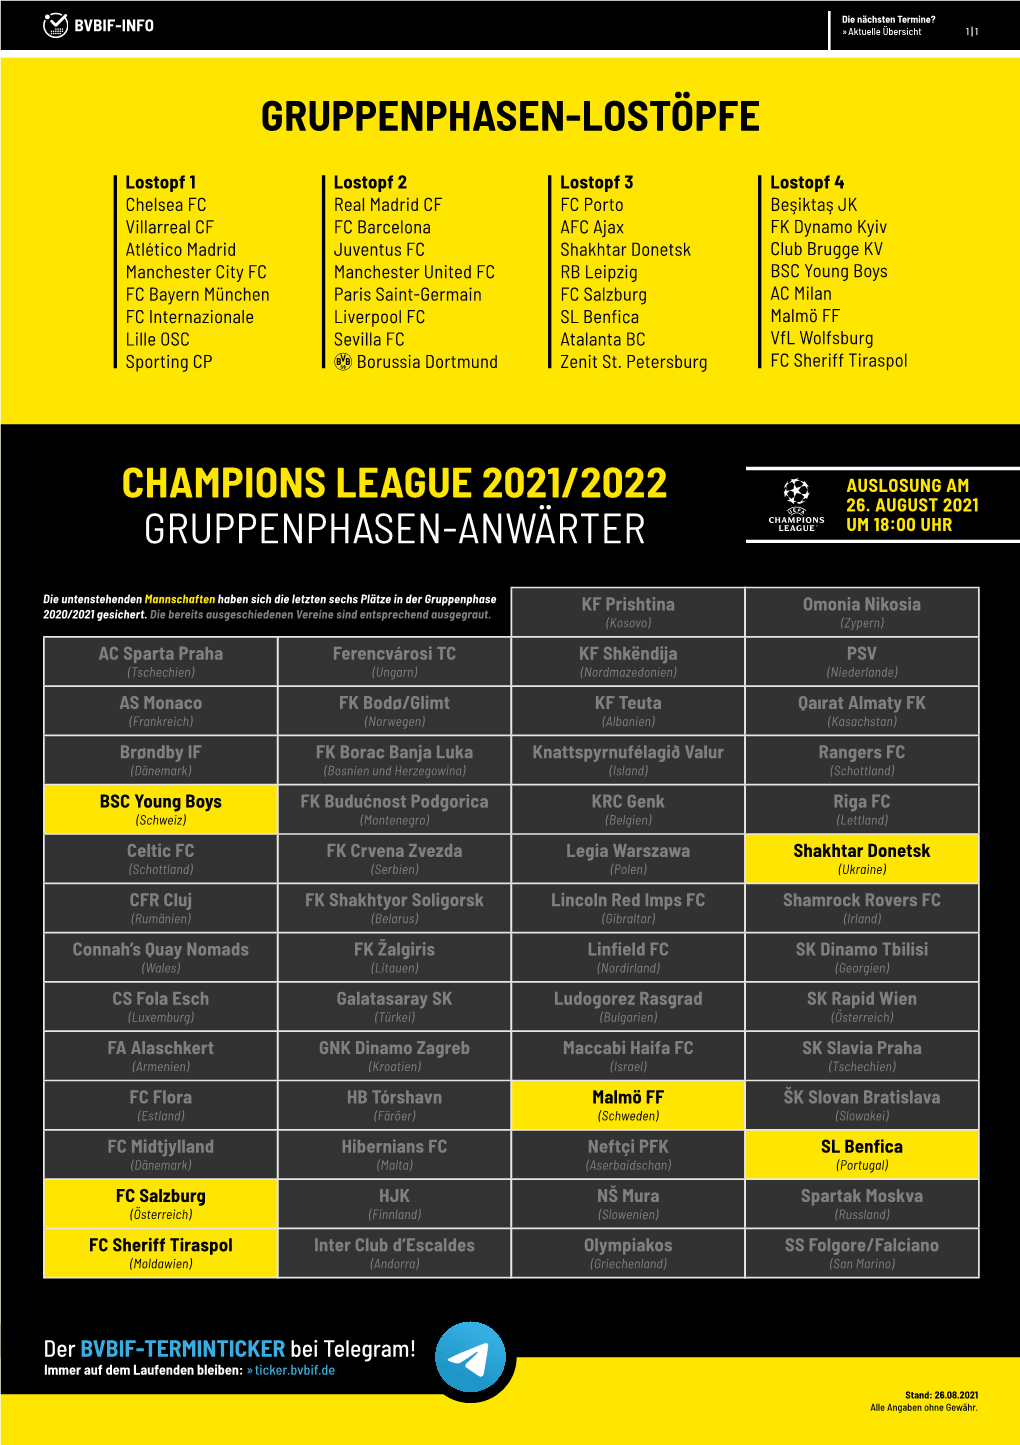 BVBIF-INFO | Champions League 2021/2022